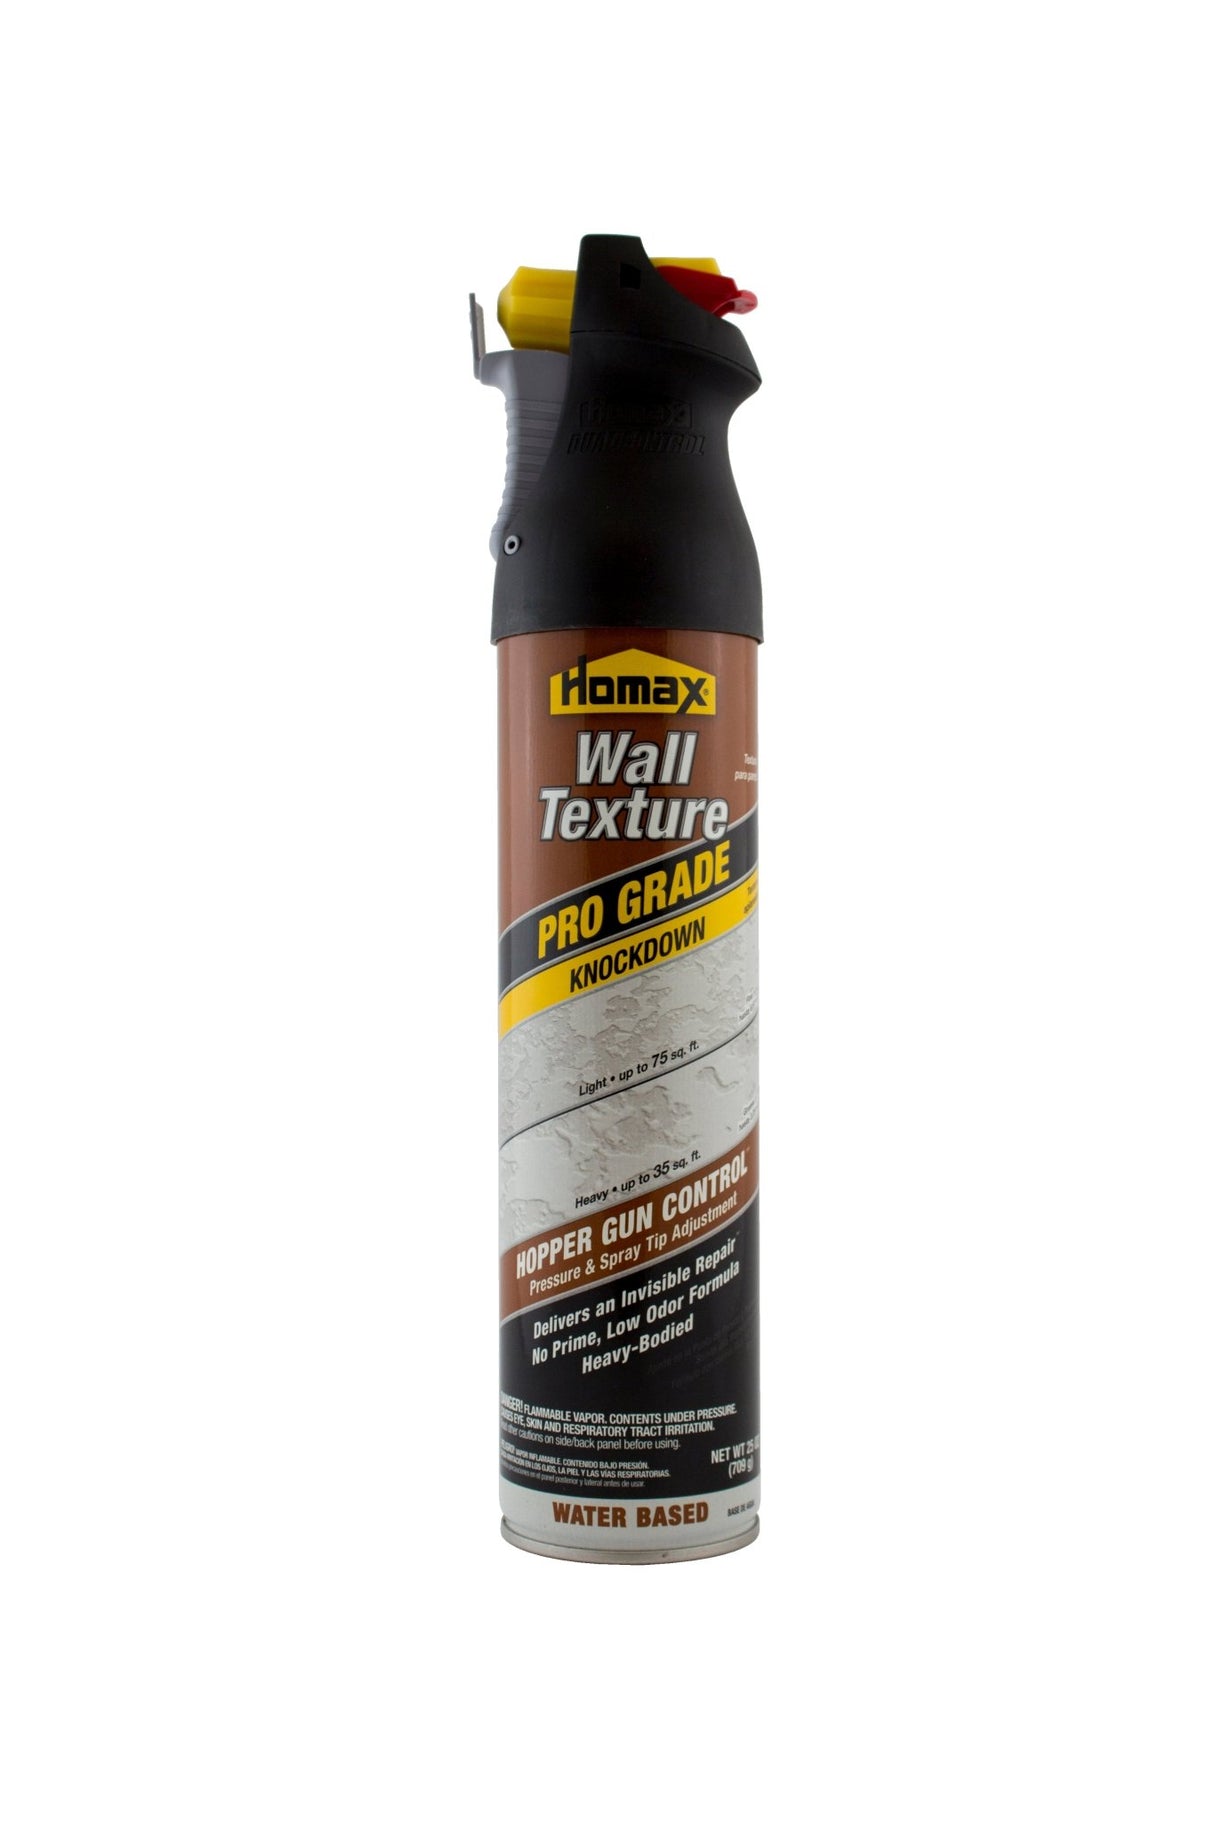 Homax Pro grado 25 oz Tintado/Blanco Knockdown Spray para textura de pared a base de agua